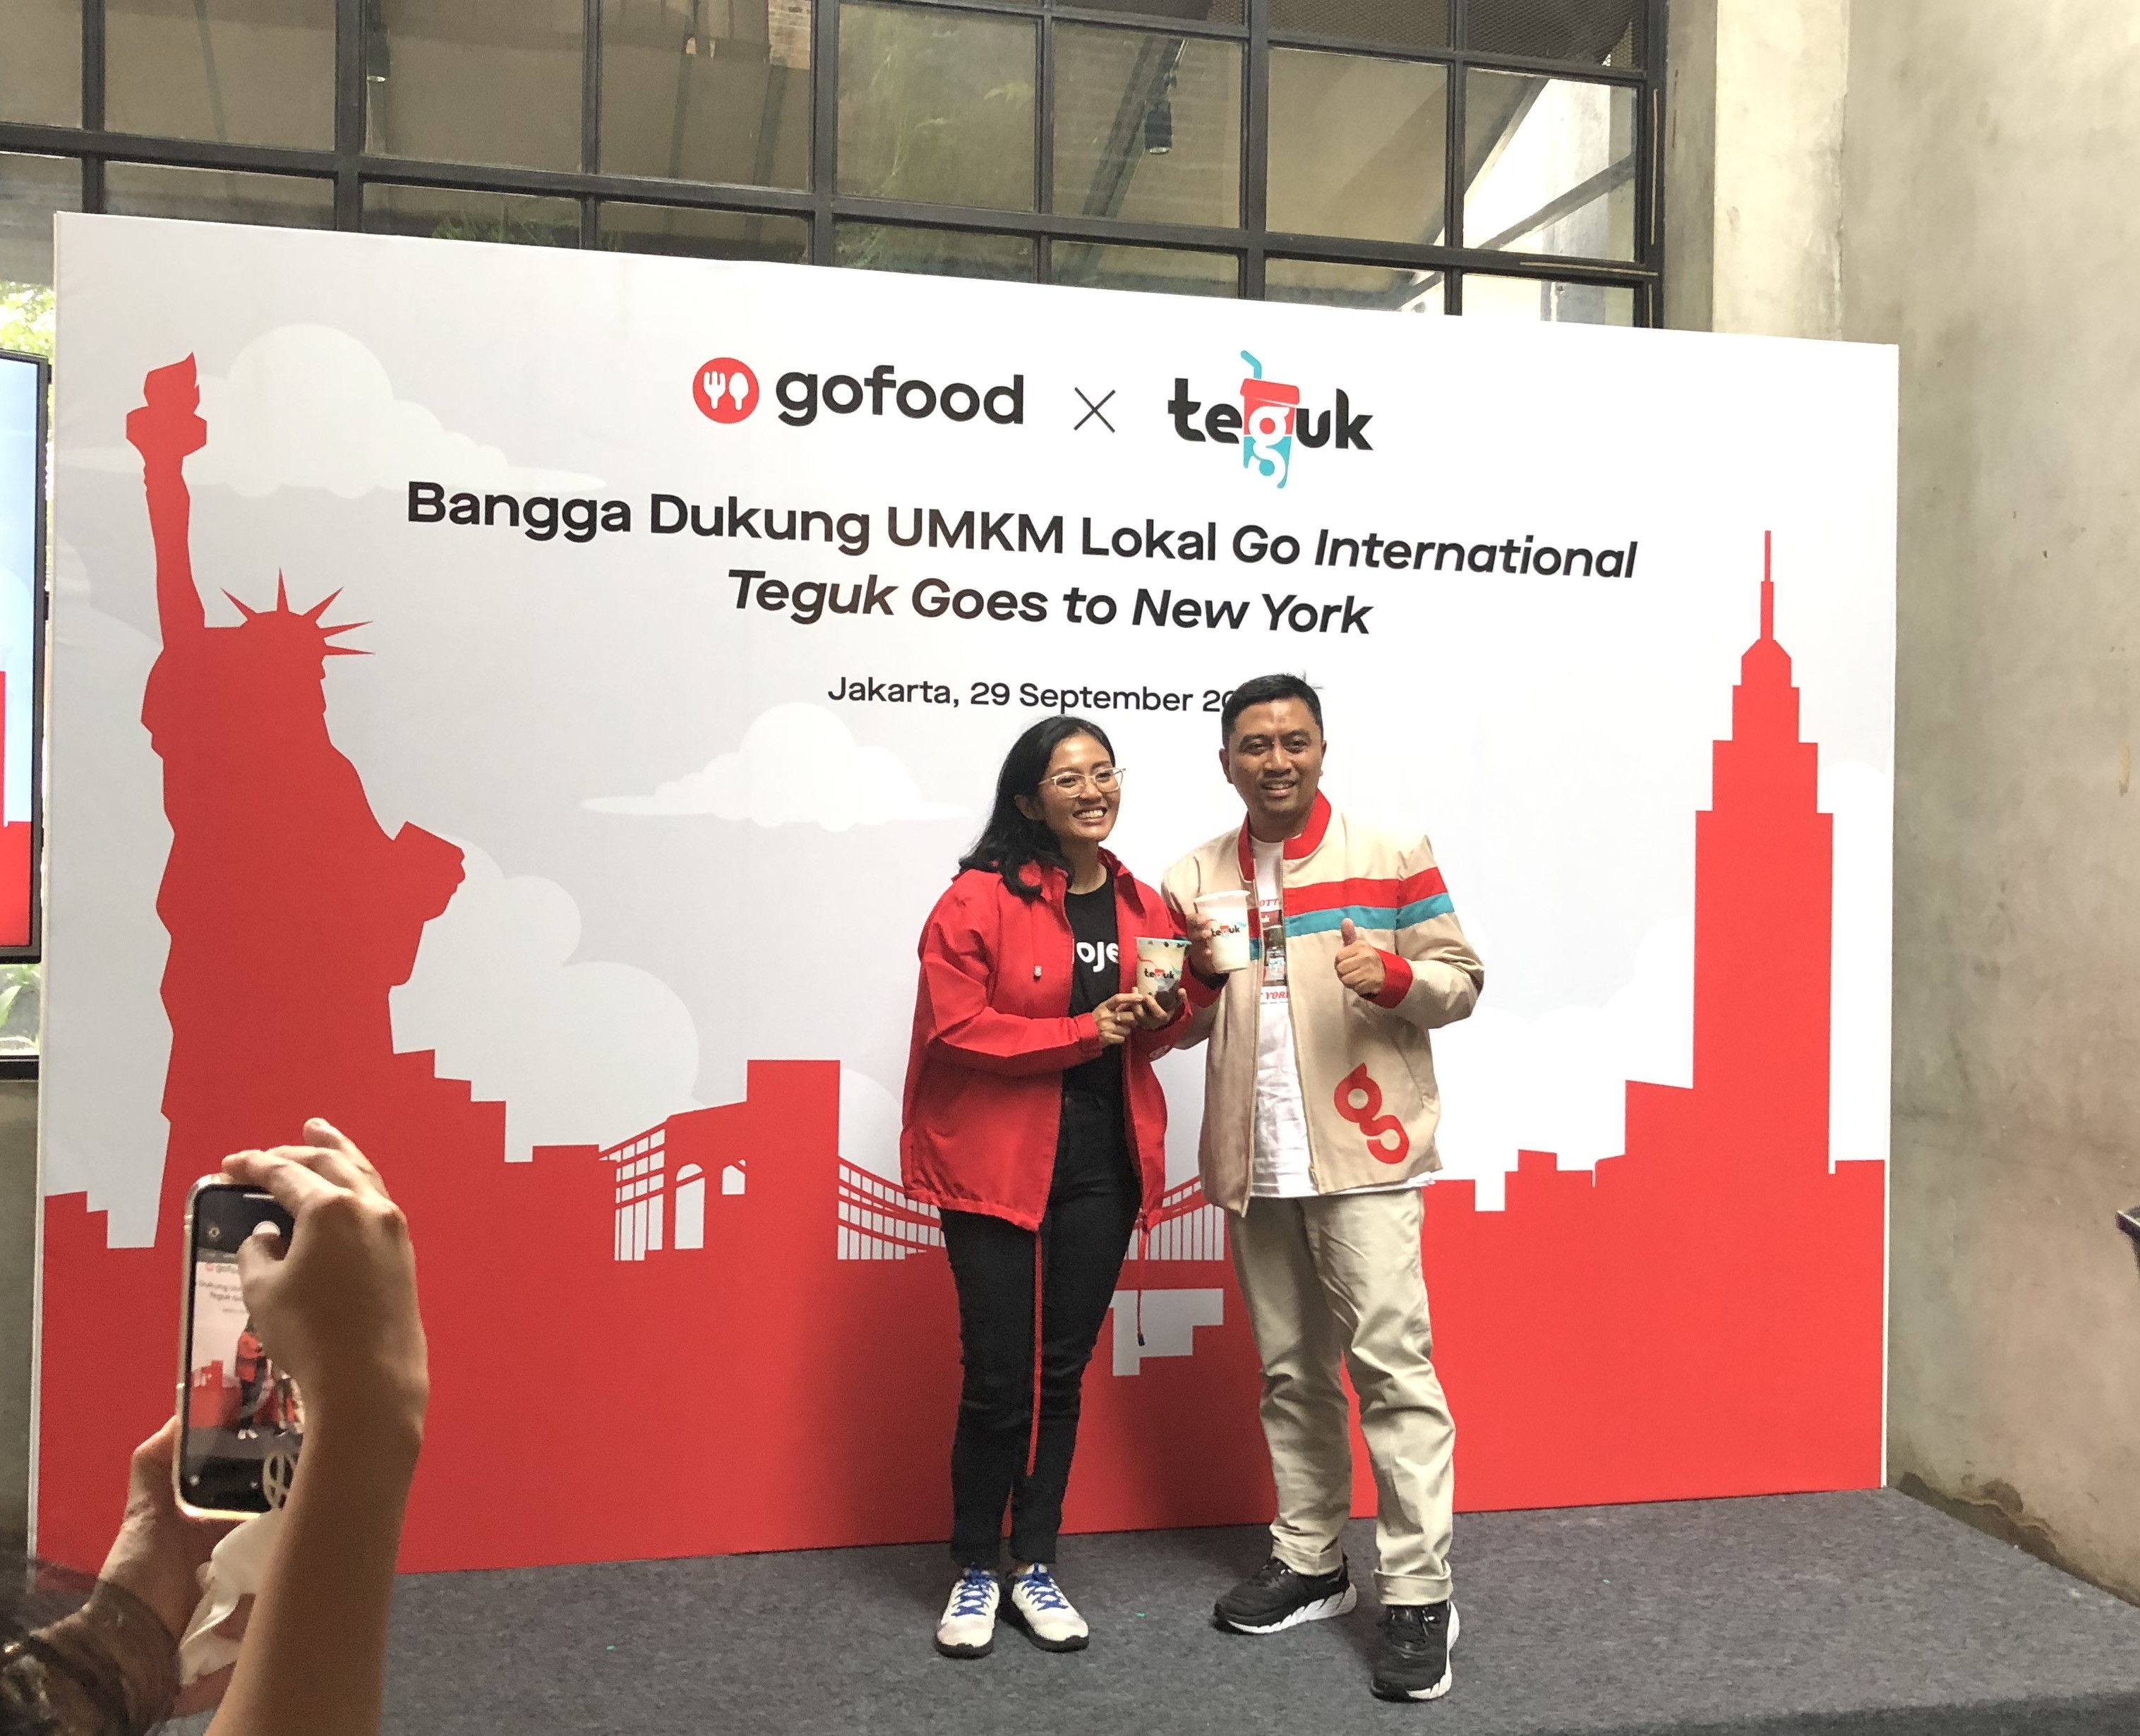 Teguk Ekspansi Ke New York, Gofood Berperan Dorong Umkm Kuliner Go Global